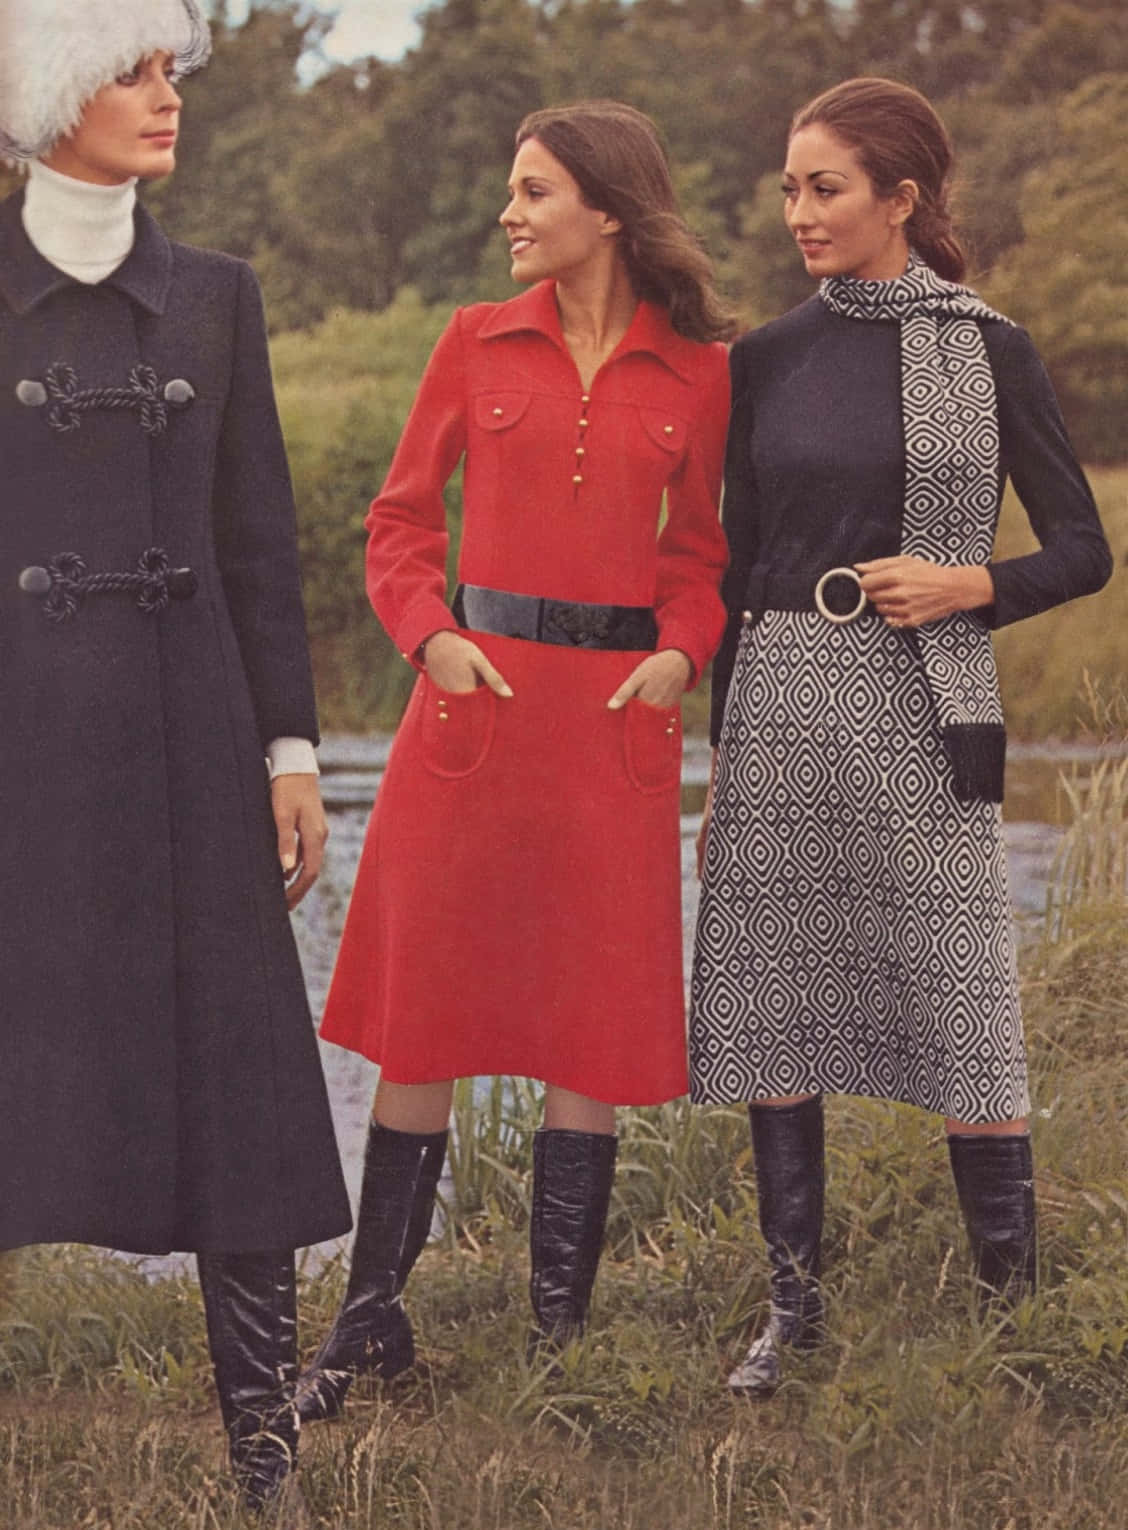 A flashback to 70s fashion